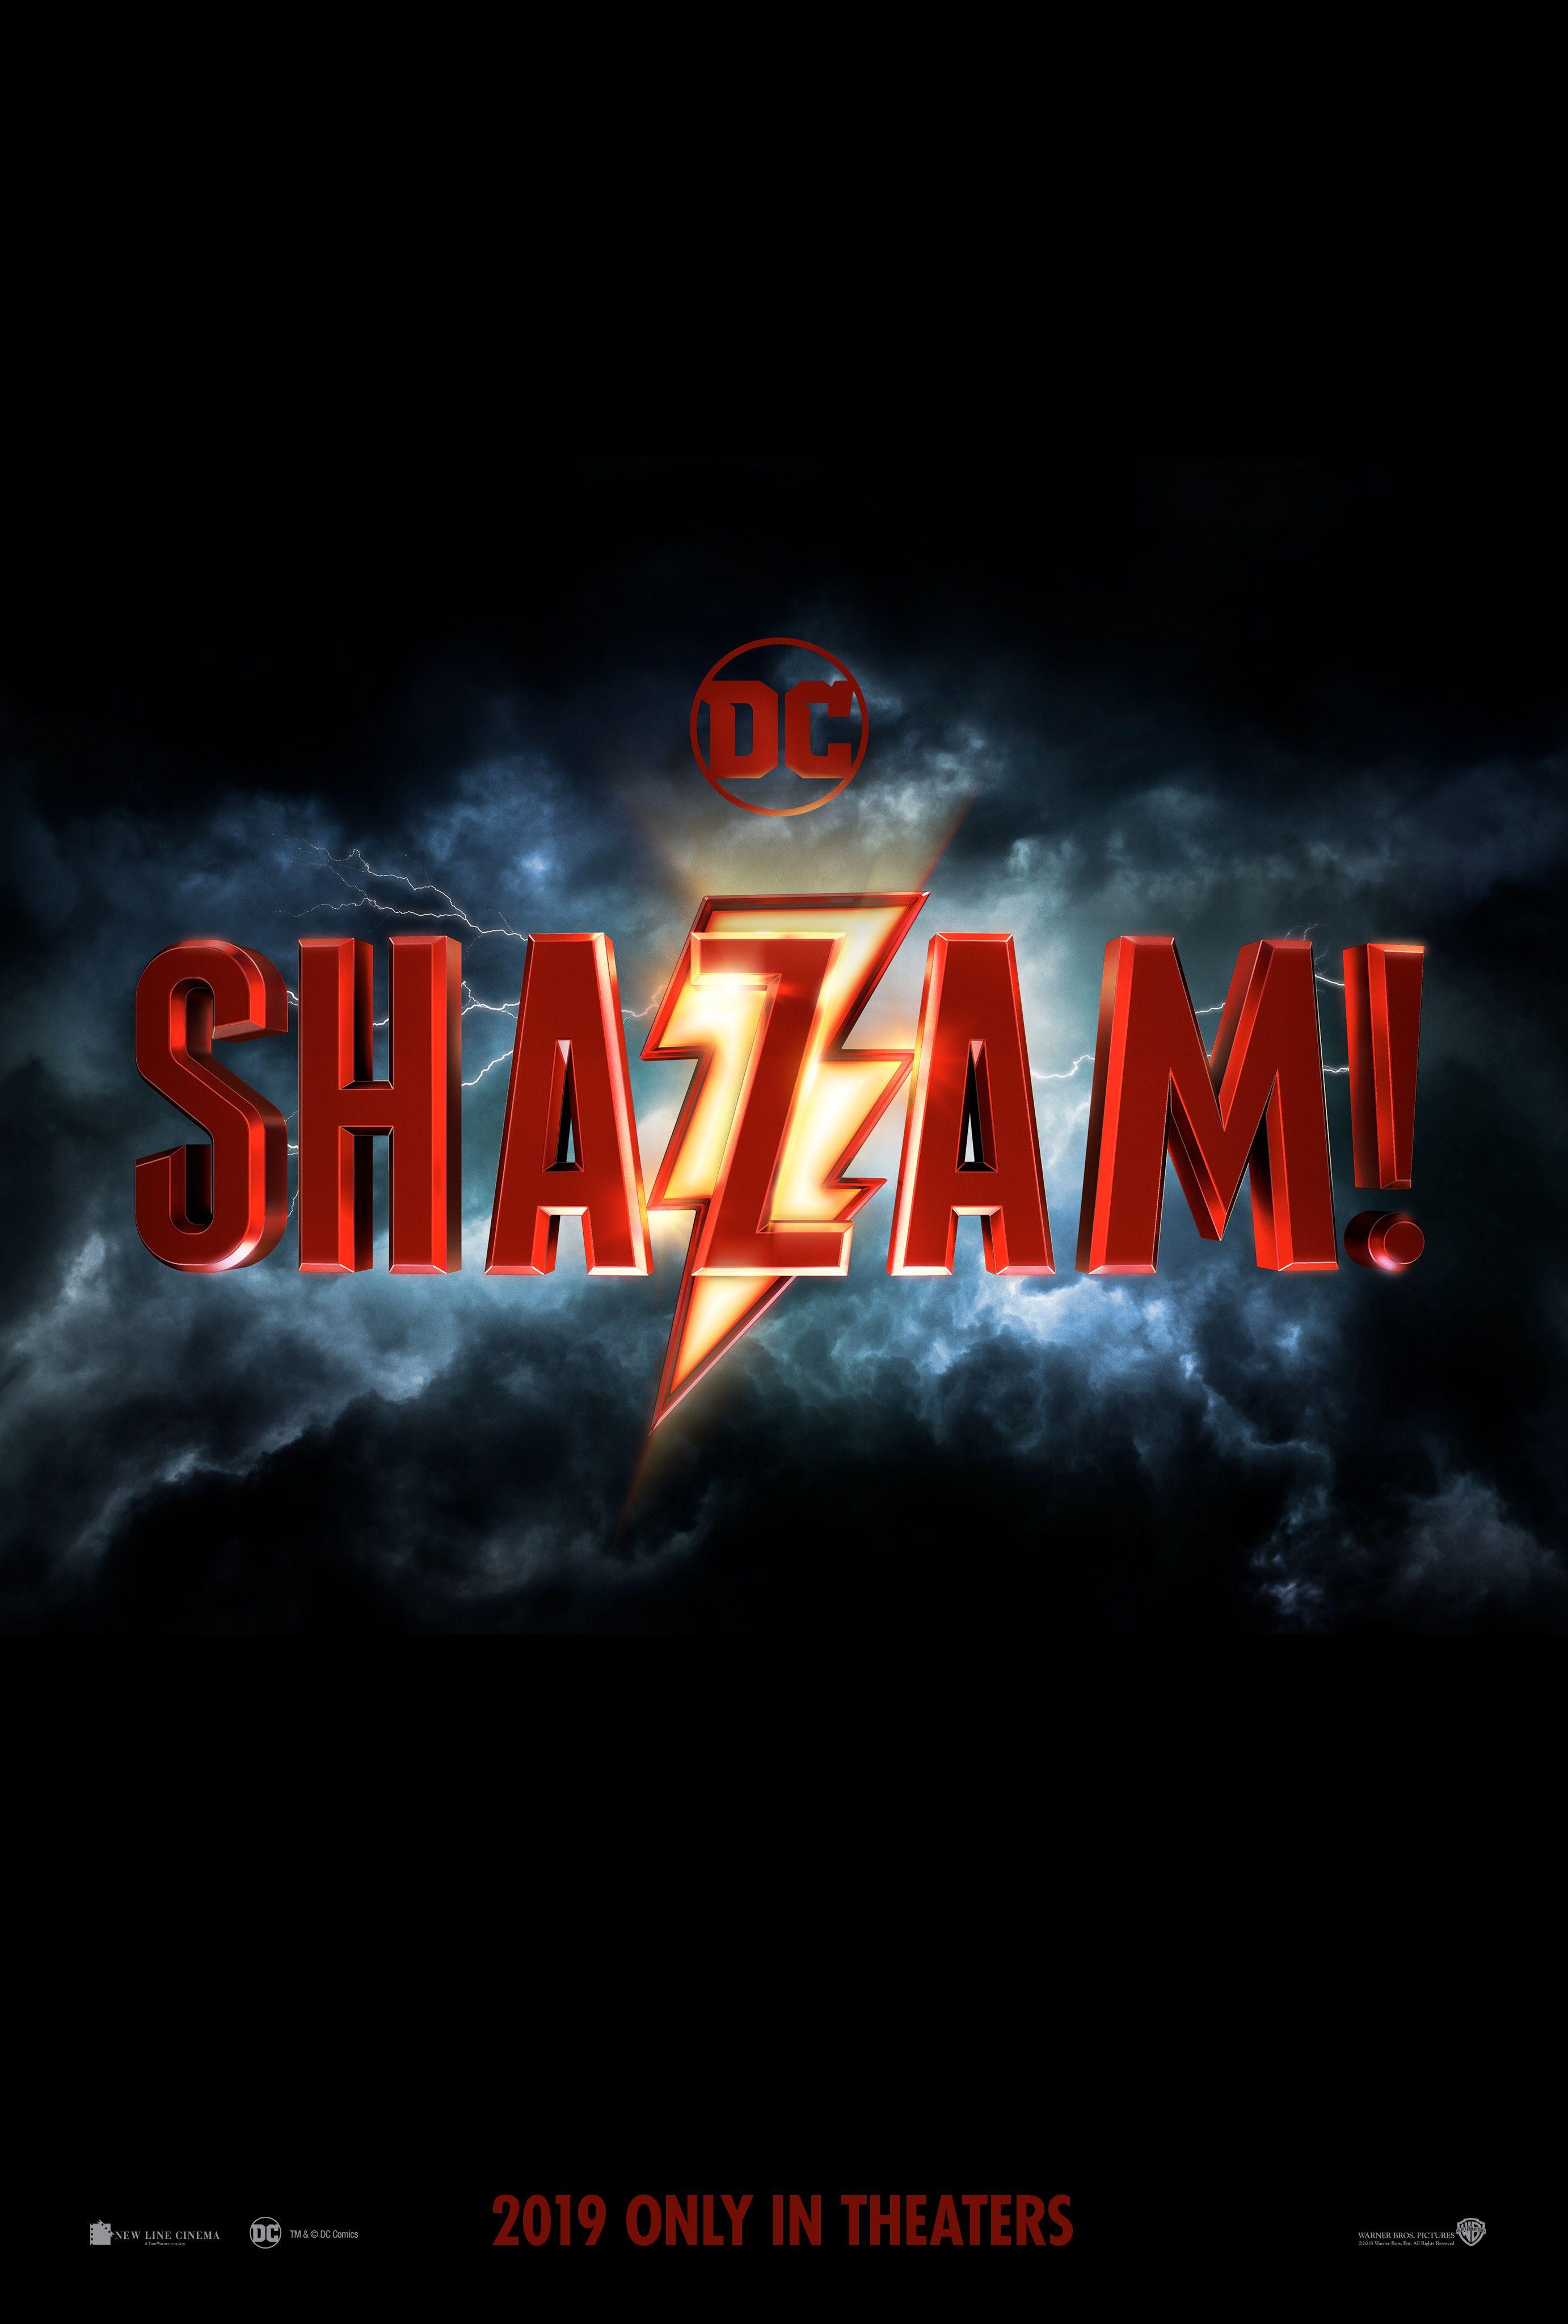 Dceu Logo - Shazam! Movie Logo Reveals New DCEU Film | Collider